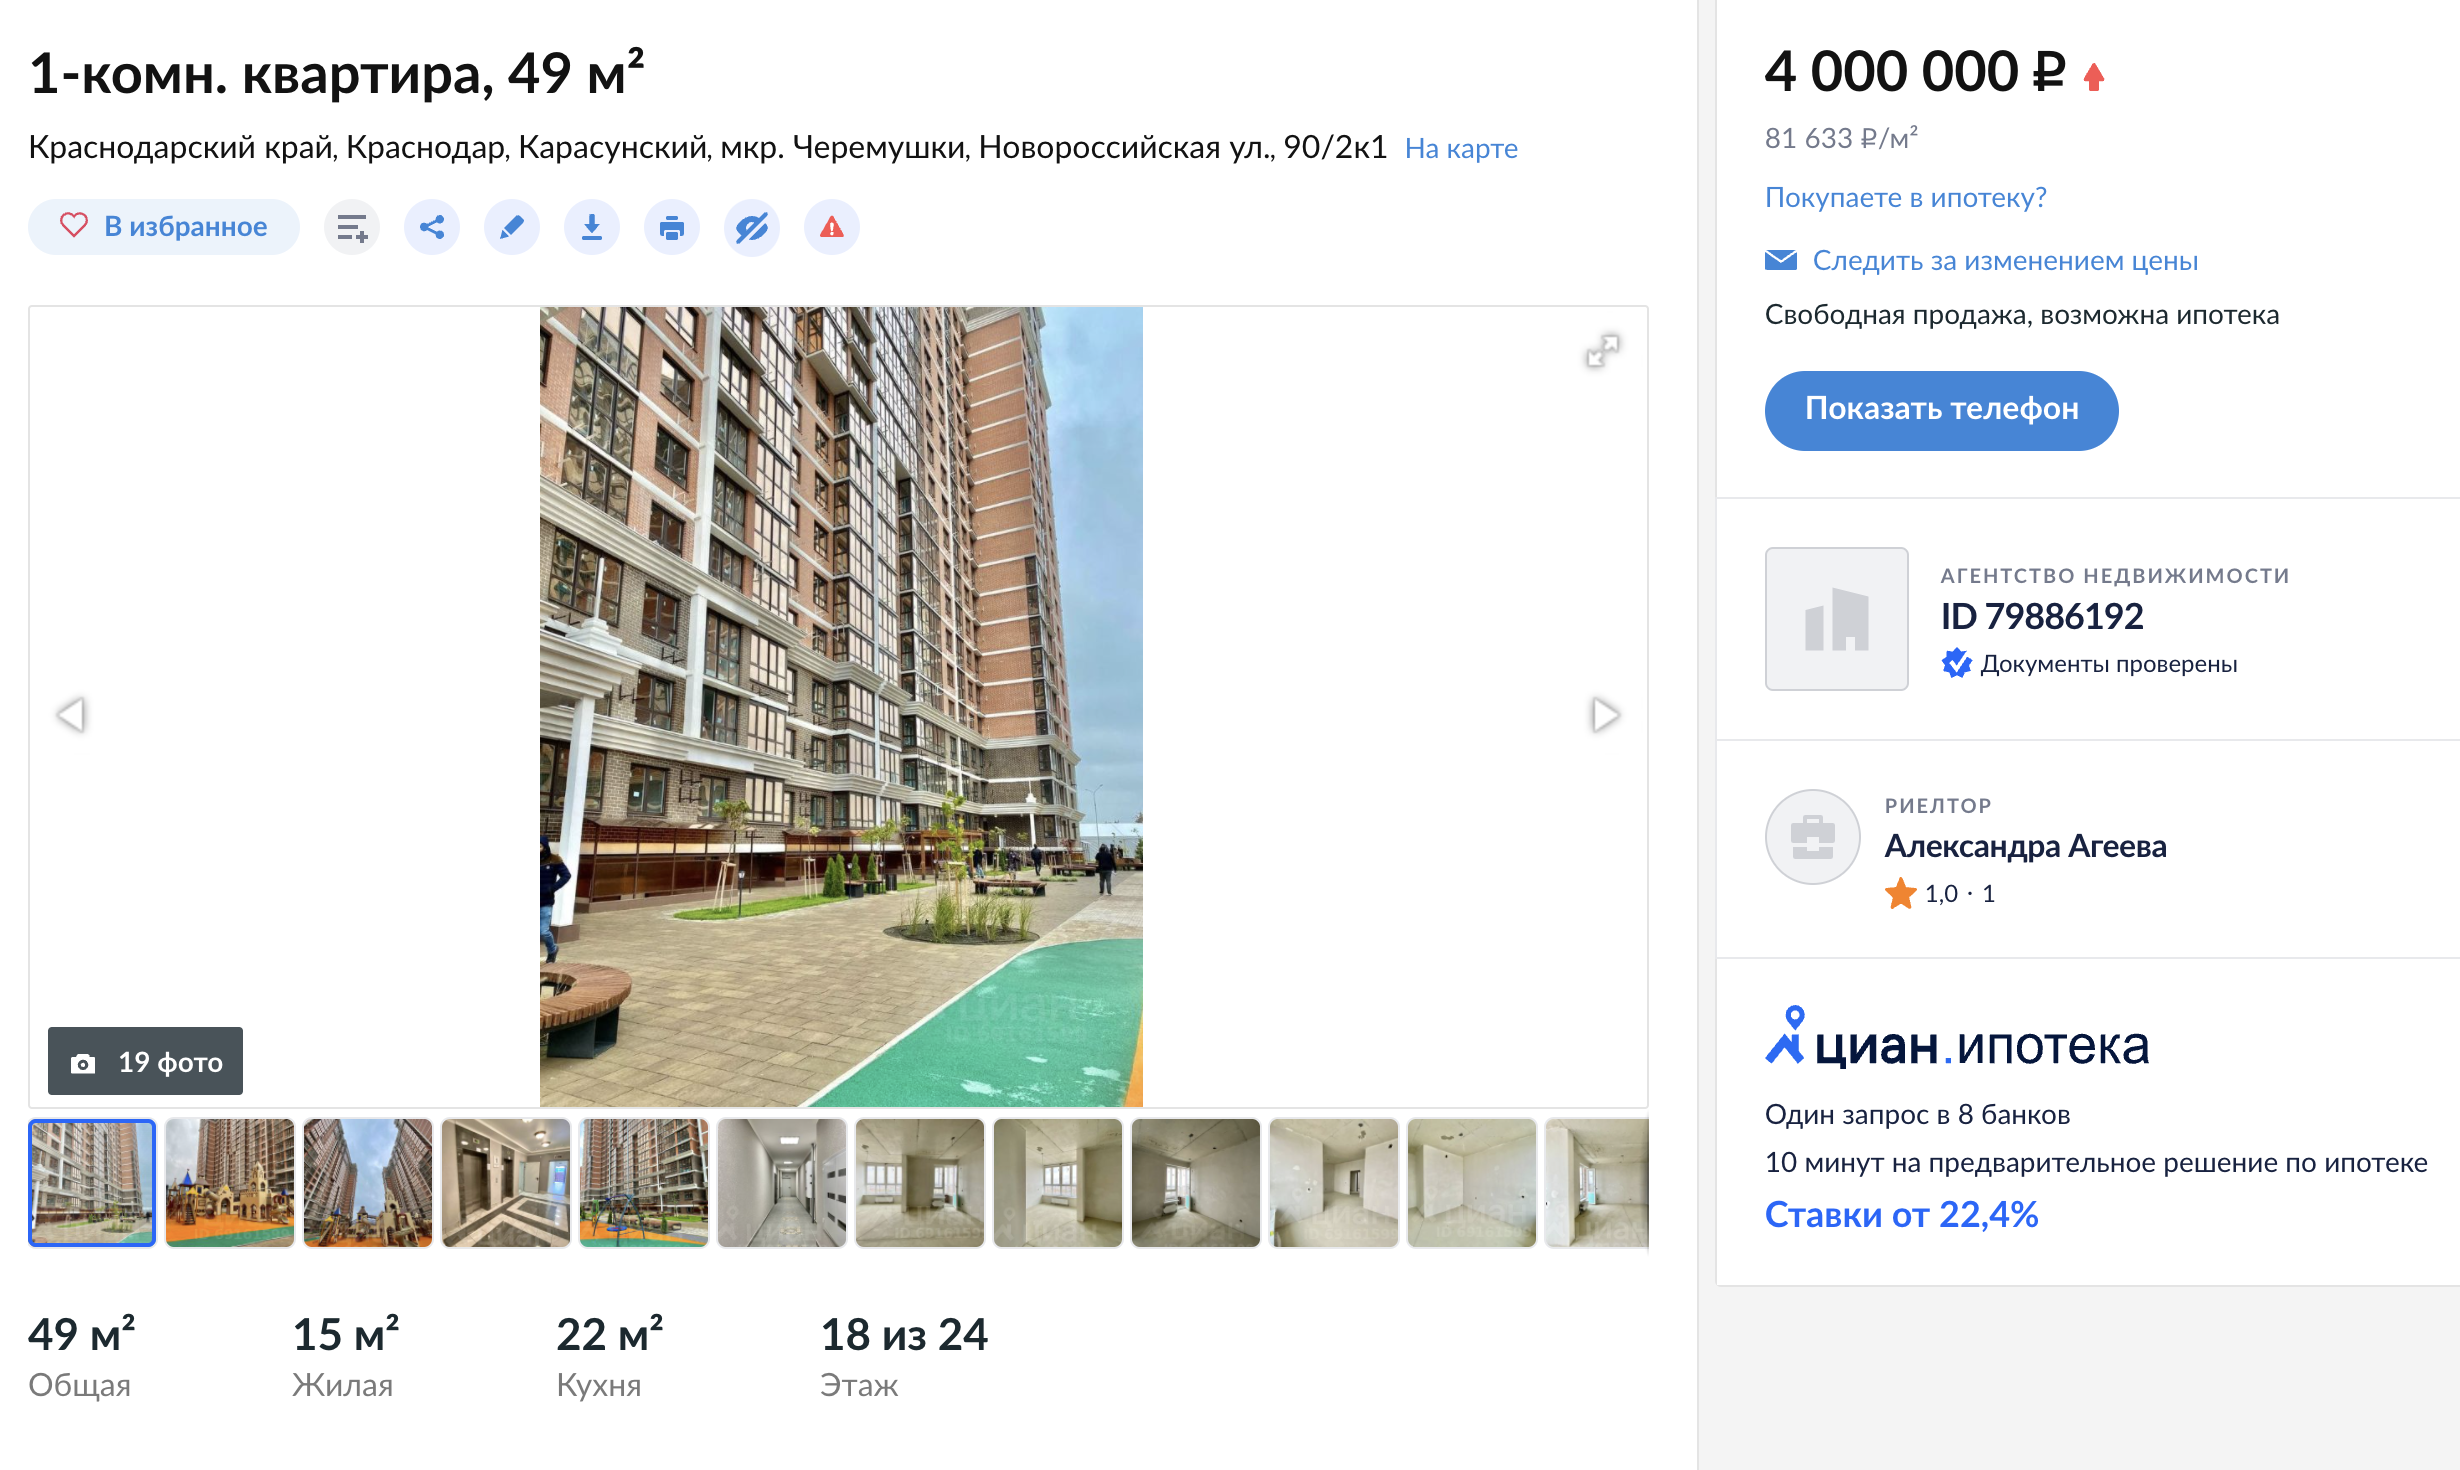 Стоимость однокомнатной квартиры в новостройке в моем микрорайоне — от 5,5 млн рублей, на вторичном рынке — от 3,5 млн